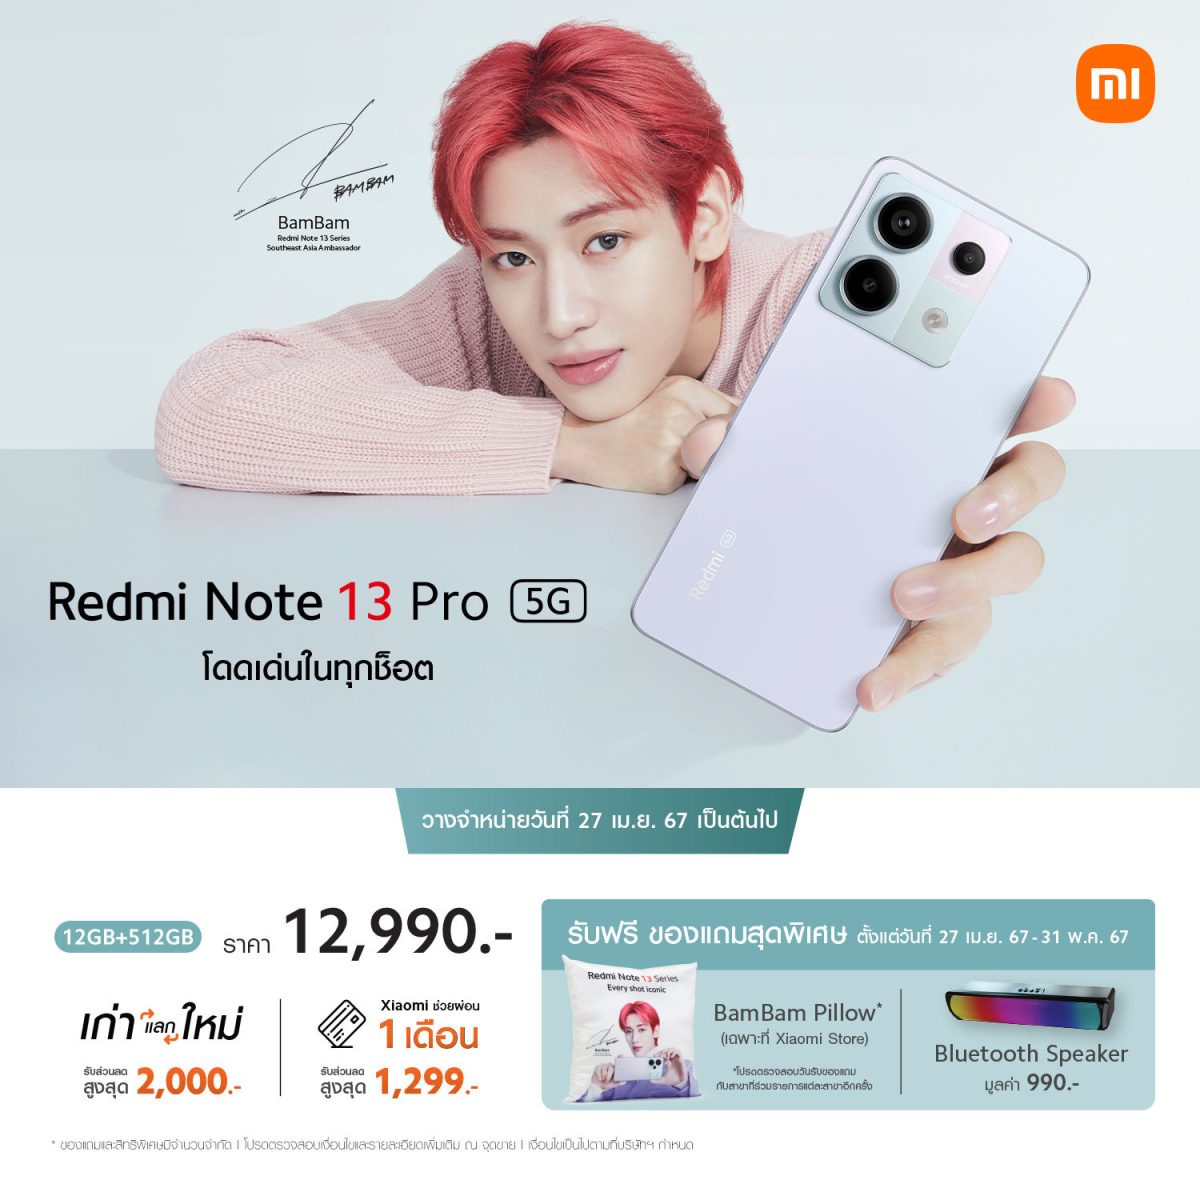 Redmi Note 13 Pro 5G วางจำหน่ายในประเทศไทยอย่างเป็นทางการตั้งแต่ 27 เม.ย. 67 เป็นต้นไป ในราคาเพียง 12,990